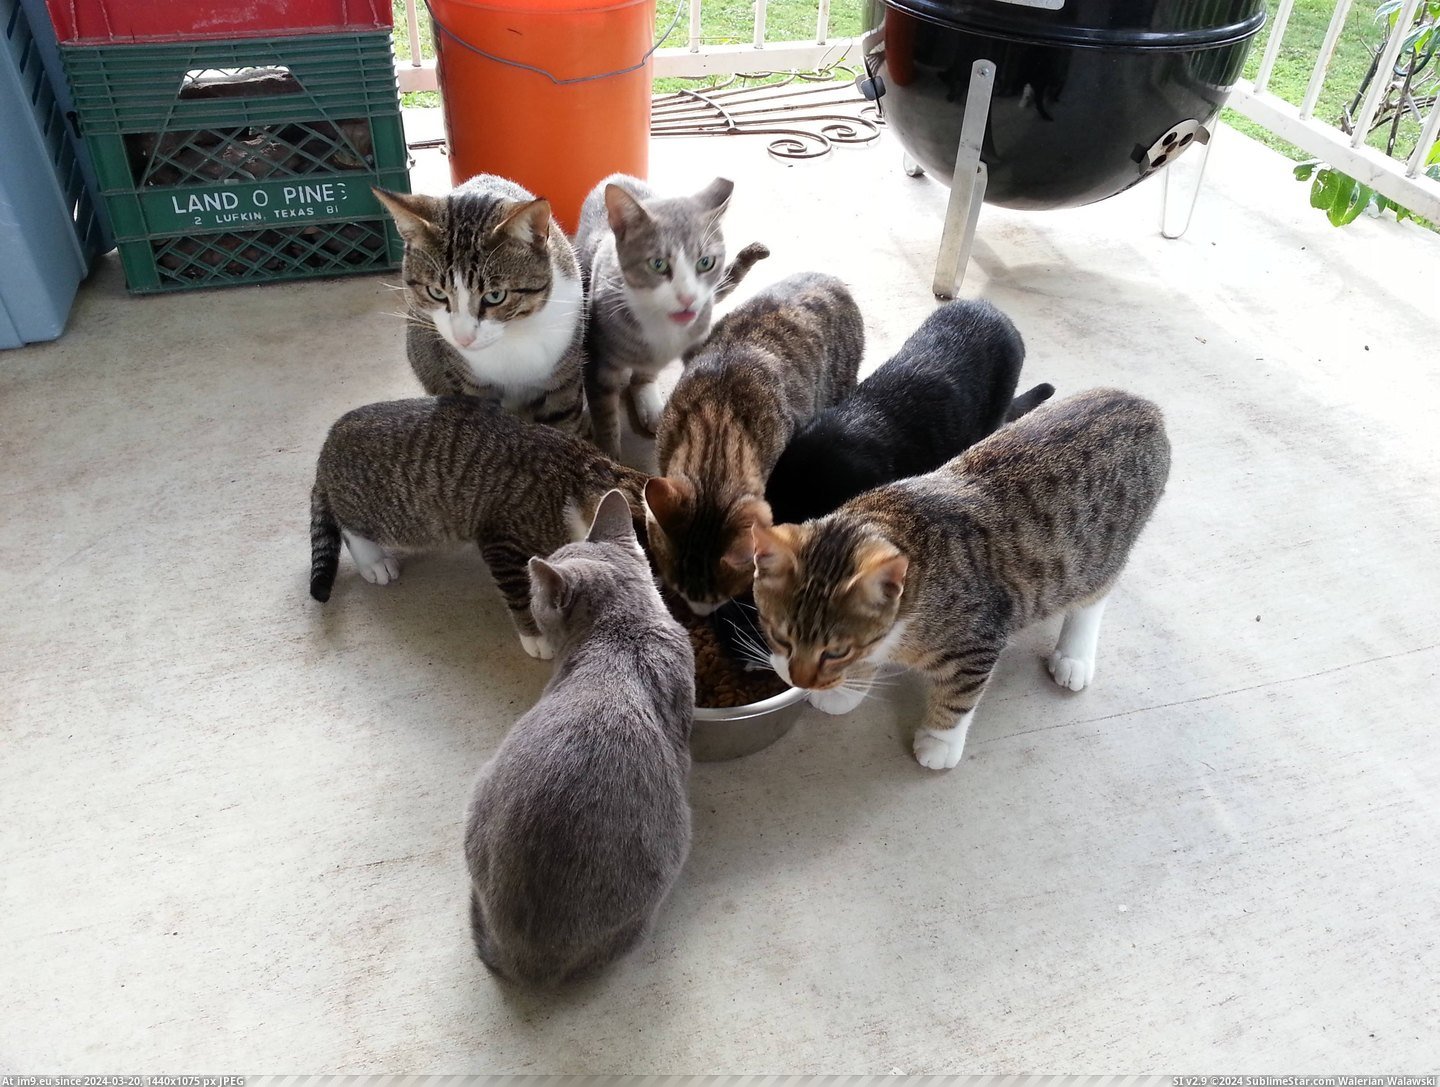 #Cats #Bigger #Bowl [Cats] I think I need a bigger bowl... Pic. (Изображение из альбом My r/CATS favs))